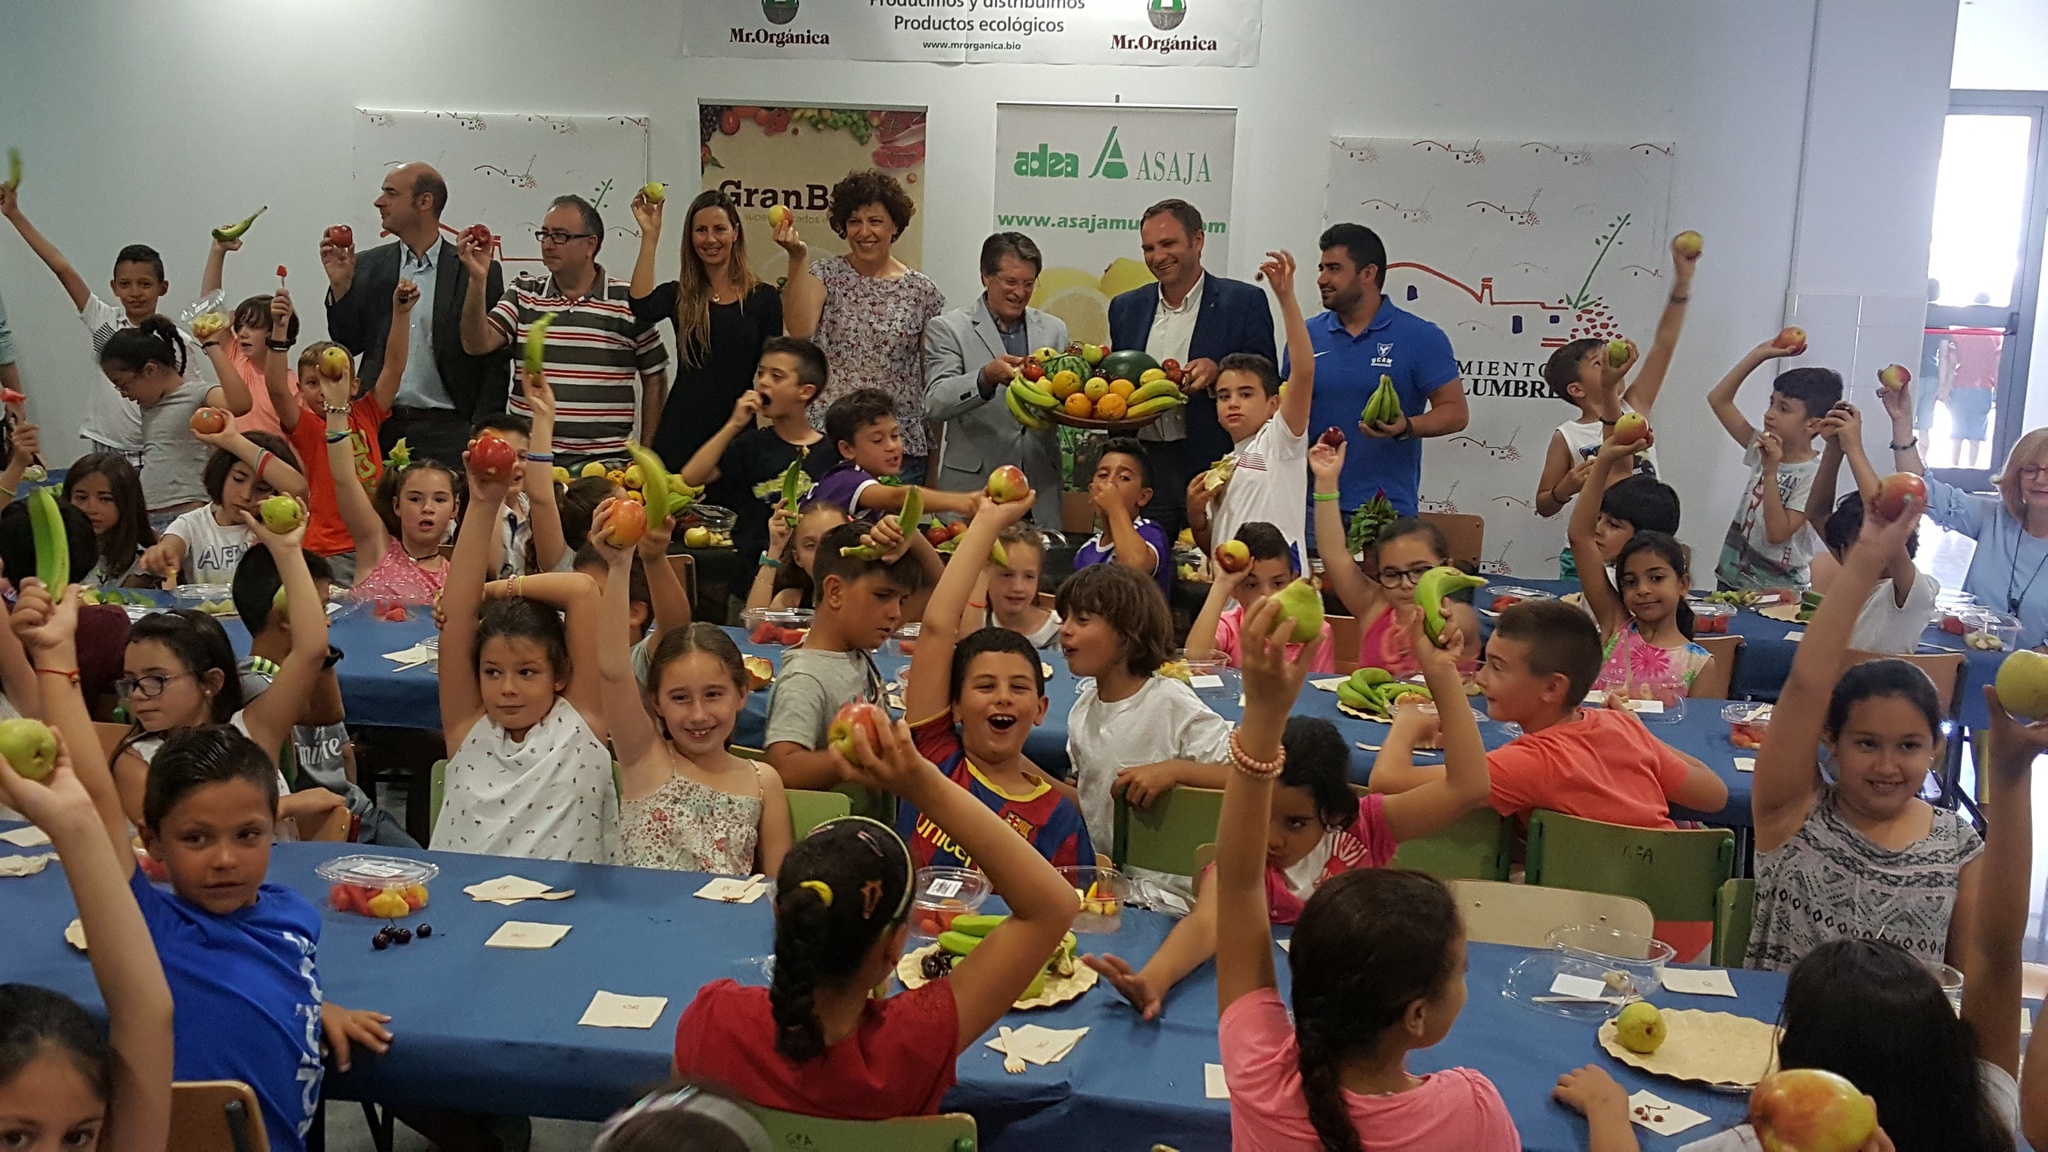 El consejero y la alcaldesa de Puerto Lumbreras presentan la campaña Niños Sanos, acompañados por los responsables de Asaja Murcia y Mr. Orgánica